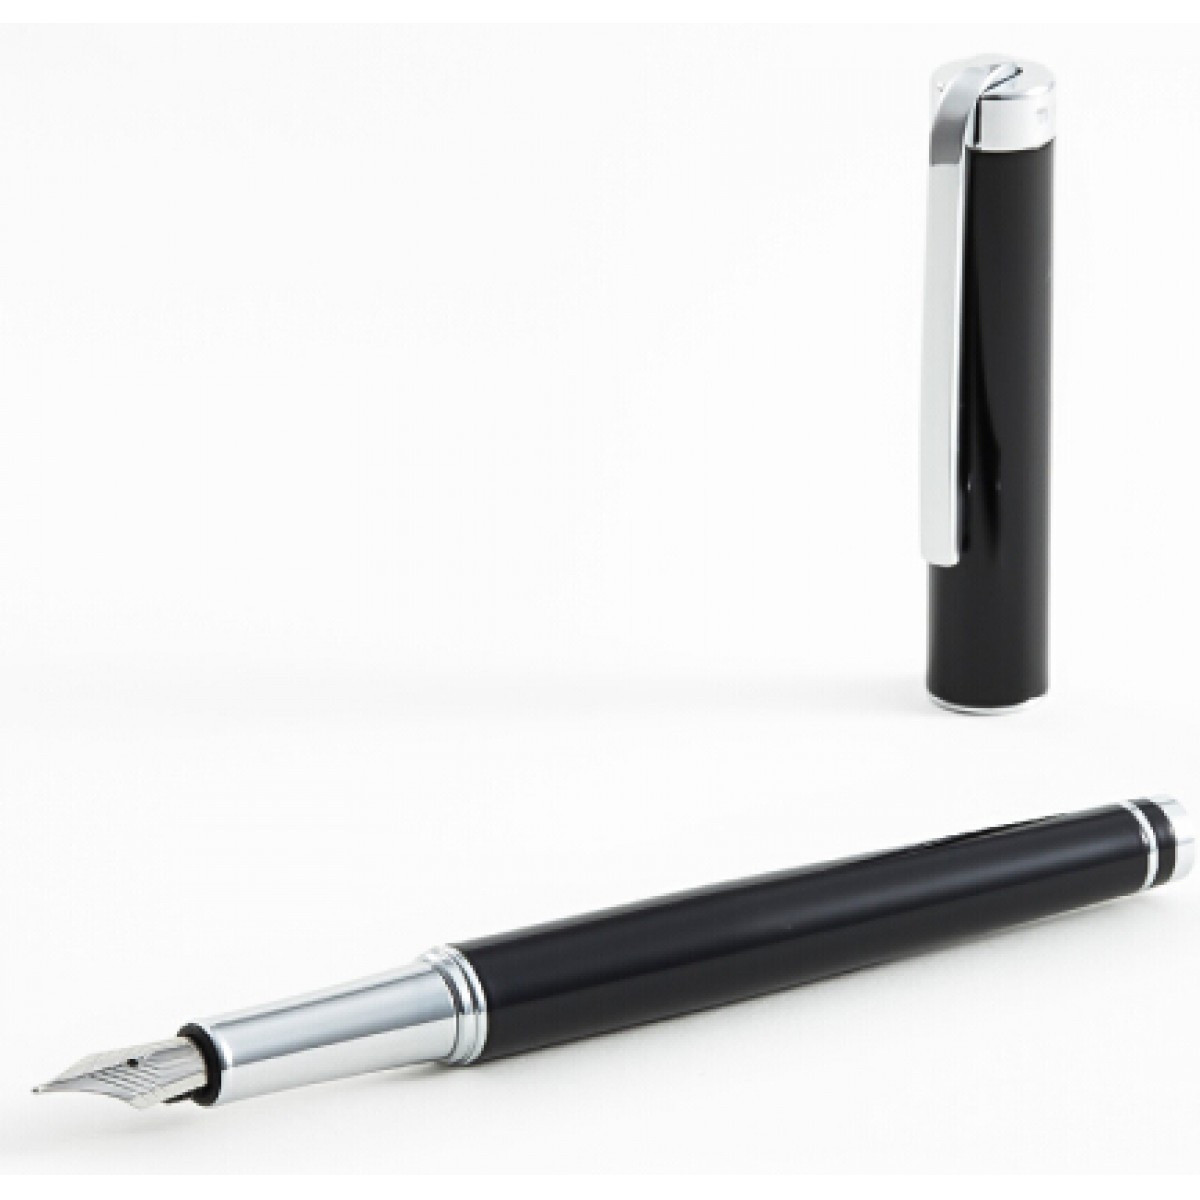 HUGO BOSS 杰出系列黑色墨水笔 HST9542A 钢笔/签字笔 商务礼品 生日礼物